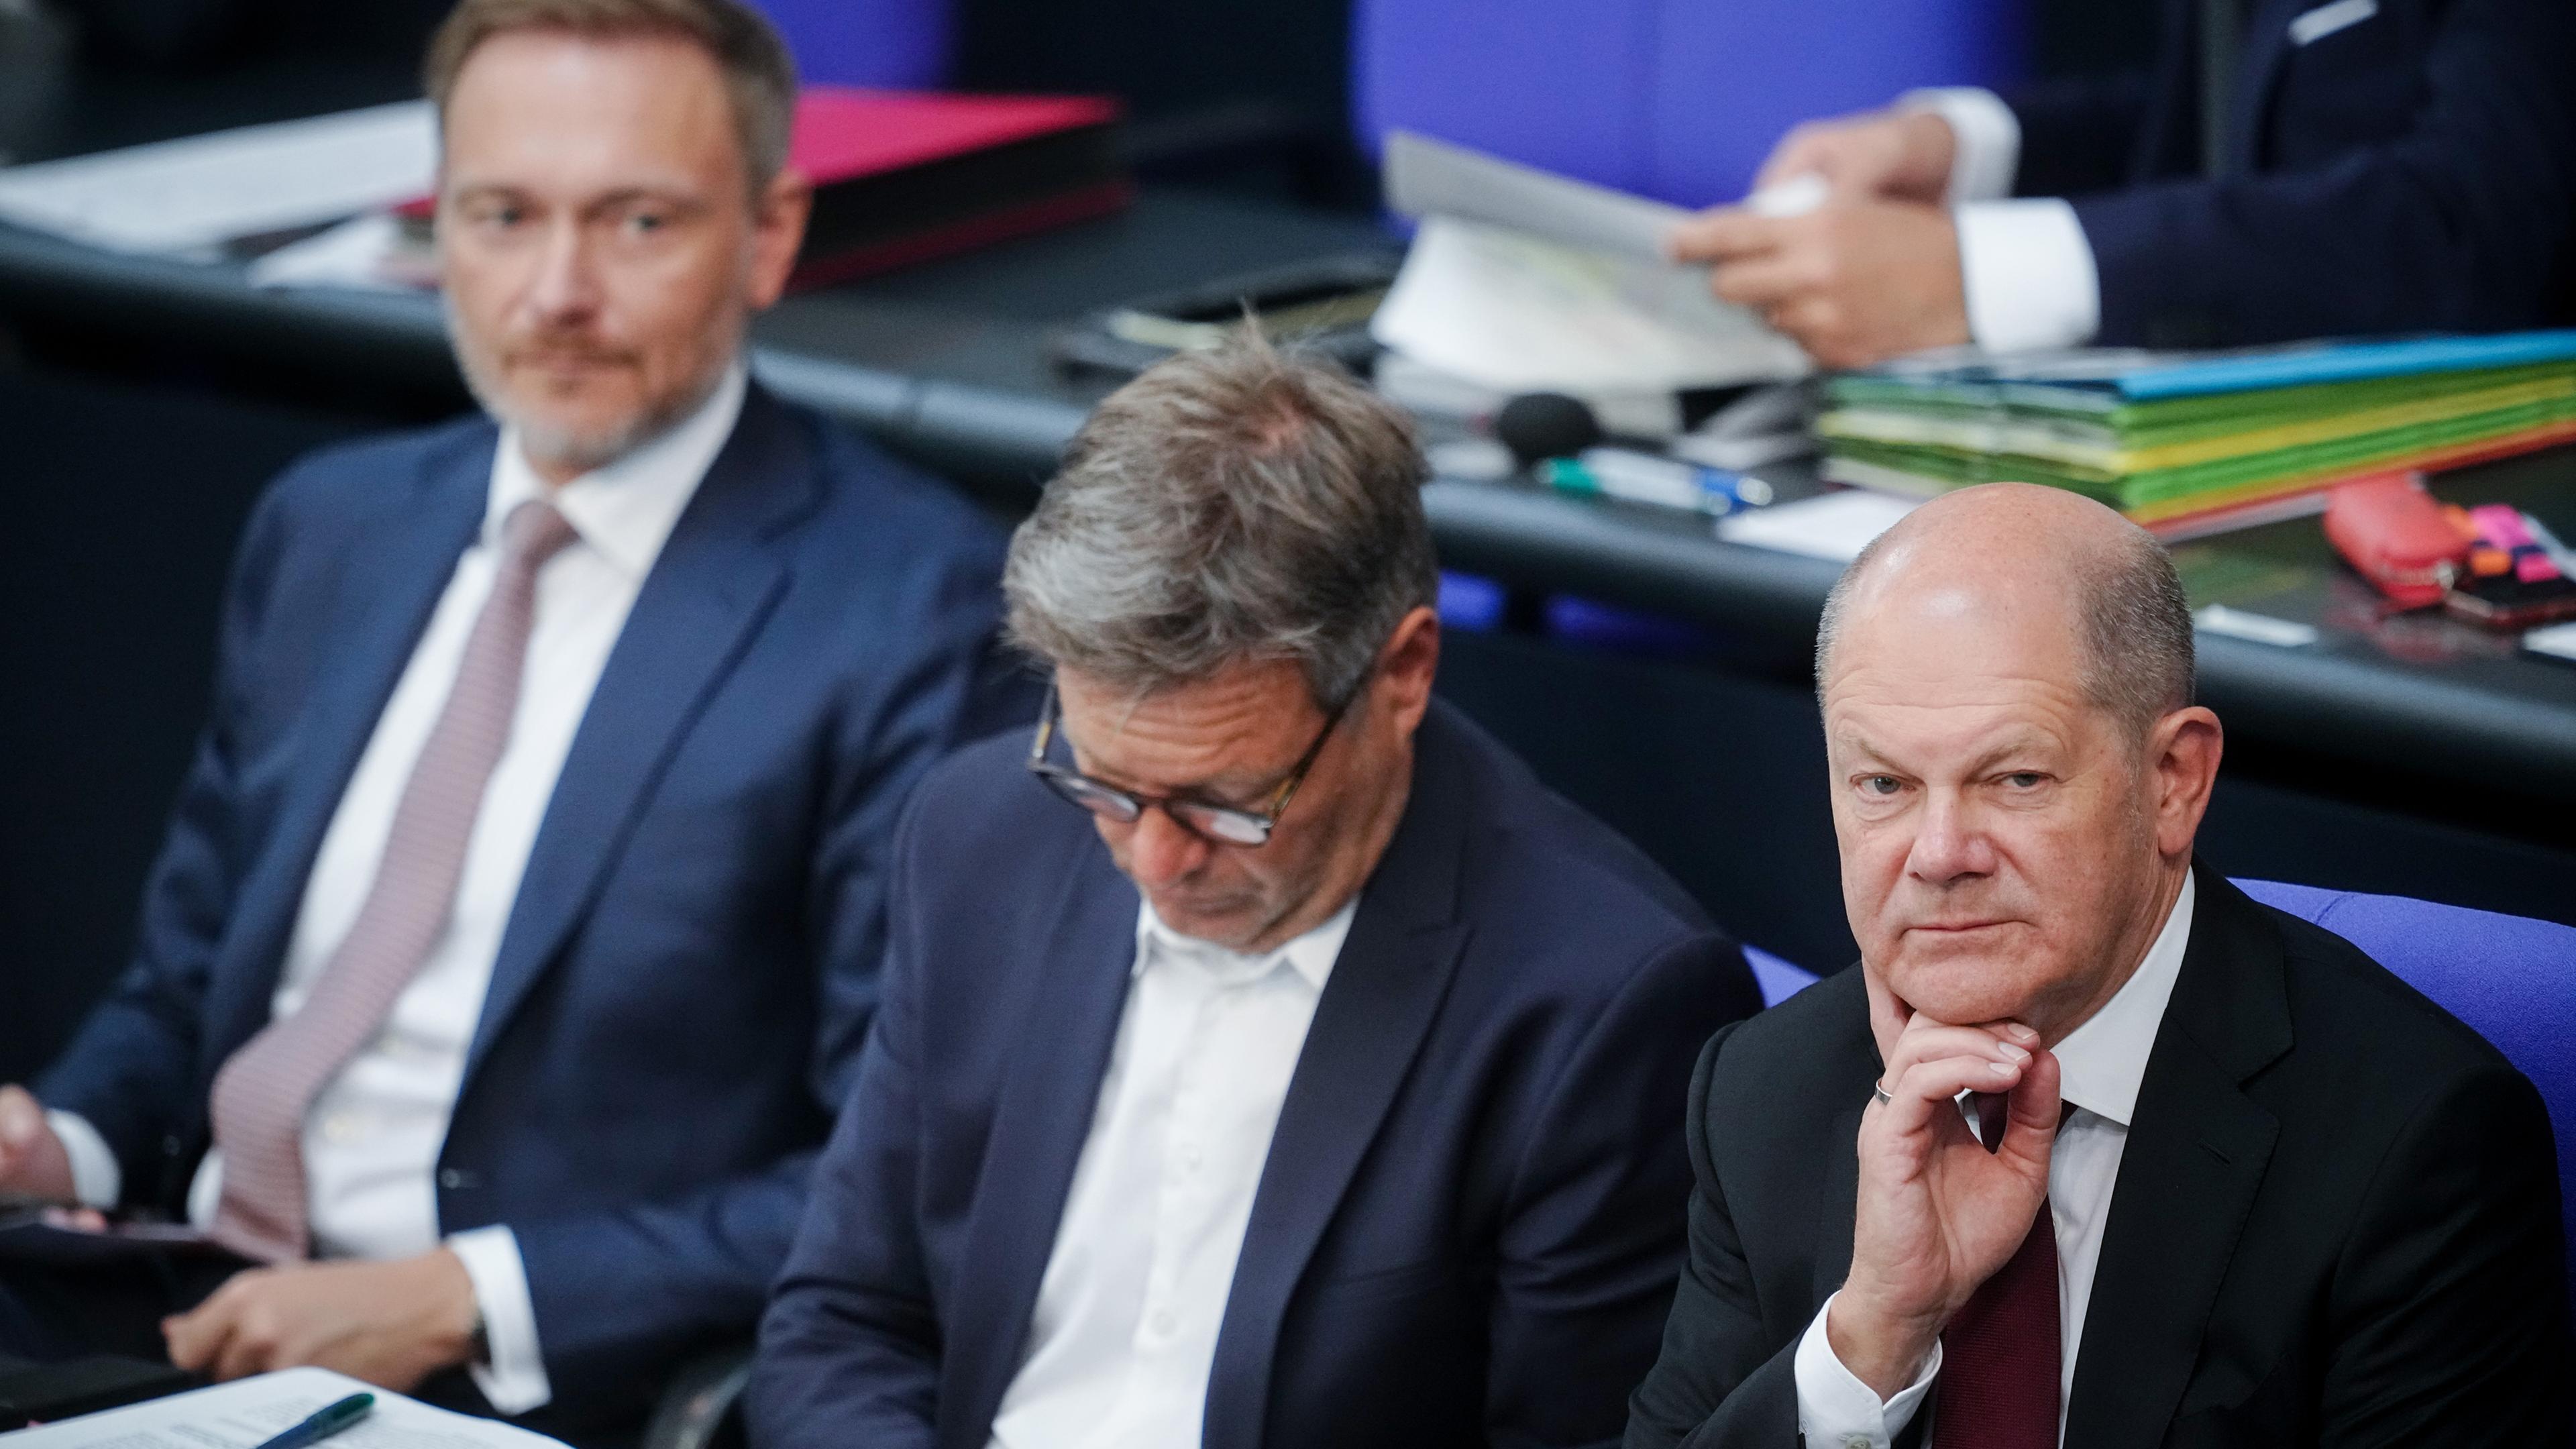 Bundeskanzler Scholz, finanzminister Lindner und Energie- und Wirtschaftsminister Habeck während einer Haushaltsdebatte im Bundestag